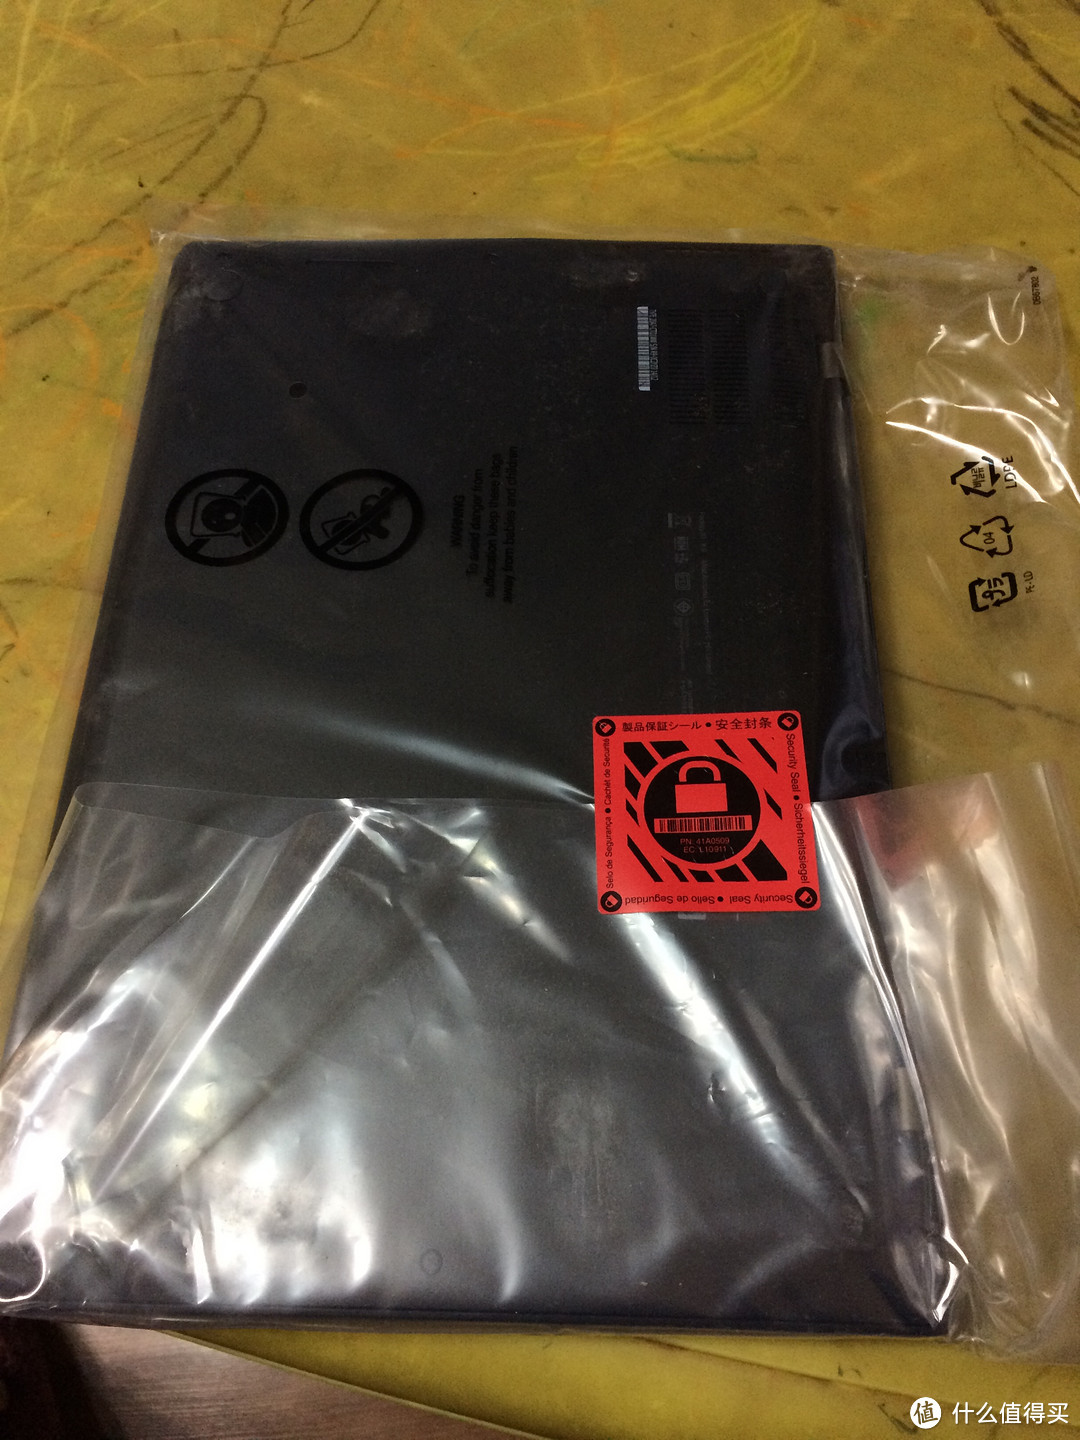 日本联想官网入手ThinkPad X1 CARBON 购入记